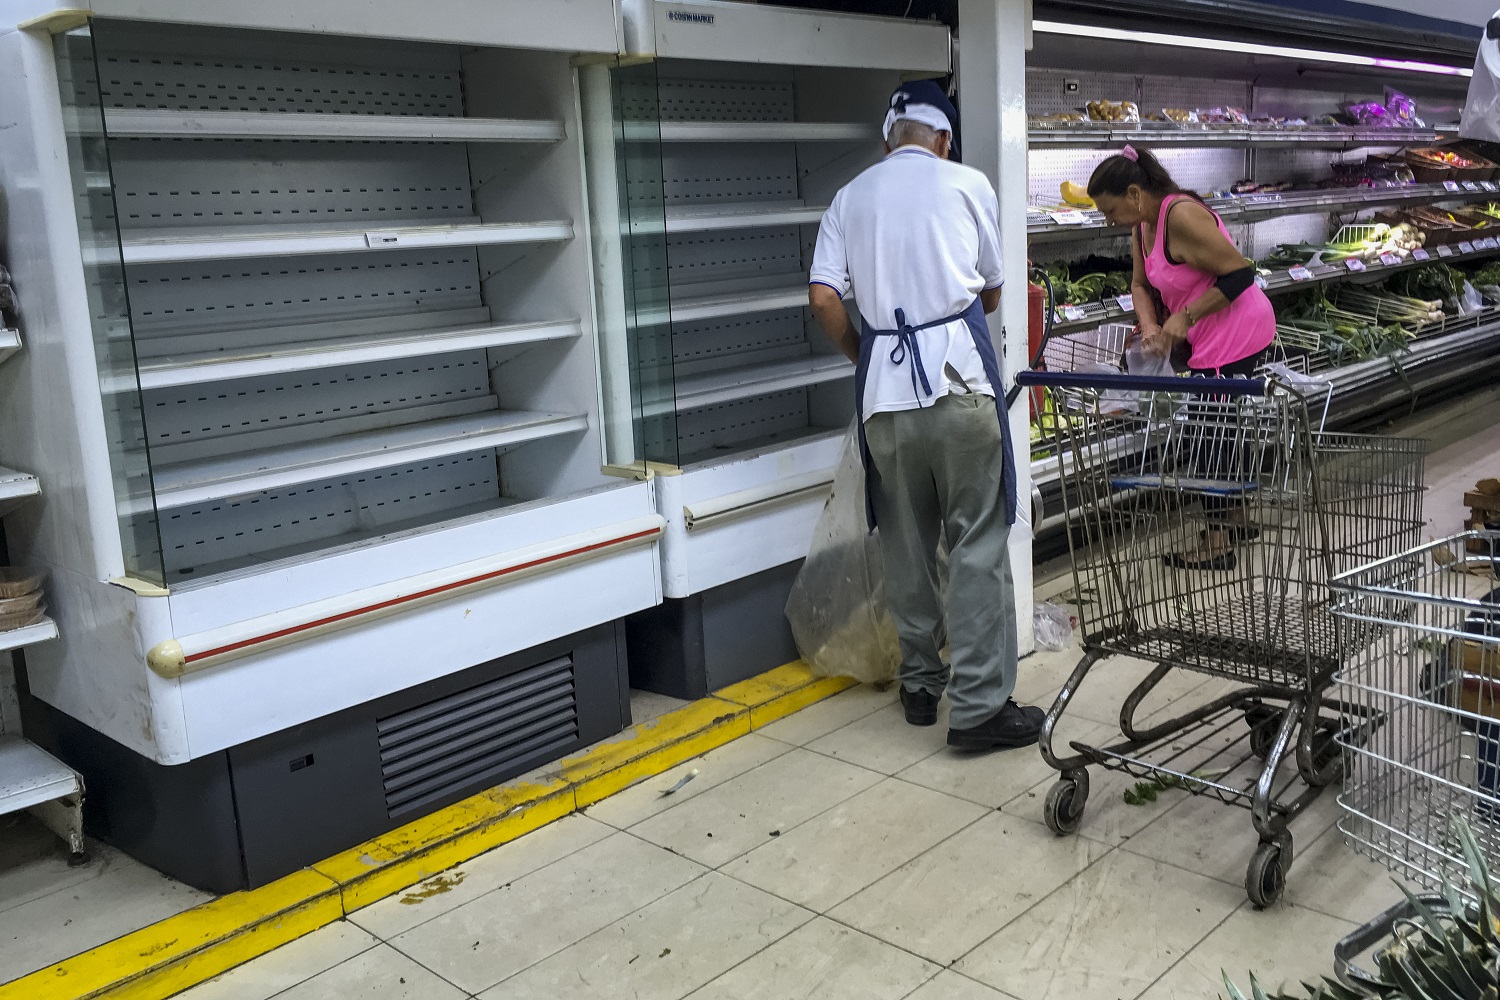 CAR24. CARACAS (VENEZUELA), 24/07/2017.- Personas buscan alimentos en un supermercado con estanterías parcialmente vacíos hoy, lunes 24 de julio de 2017, en Caracas (Venezuela). Numerosos supermercados de Caracas cerrarán hoy con más estanterías vacías de lo habitual después de que los habitantes de la capital hicieran acopio de alimentos y otros productos básicos ante el paro general contra el Gobierno que la oposición convocó para el miércoles y el jueves. EFE/MIGUEL GUTIÉRREZ